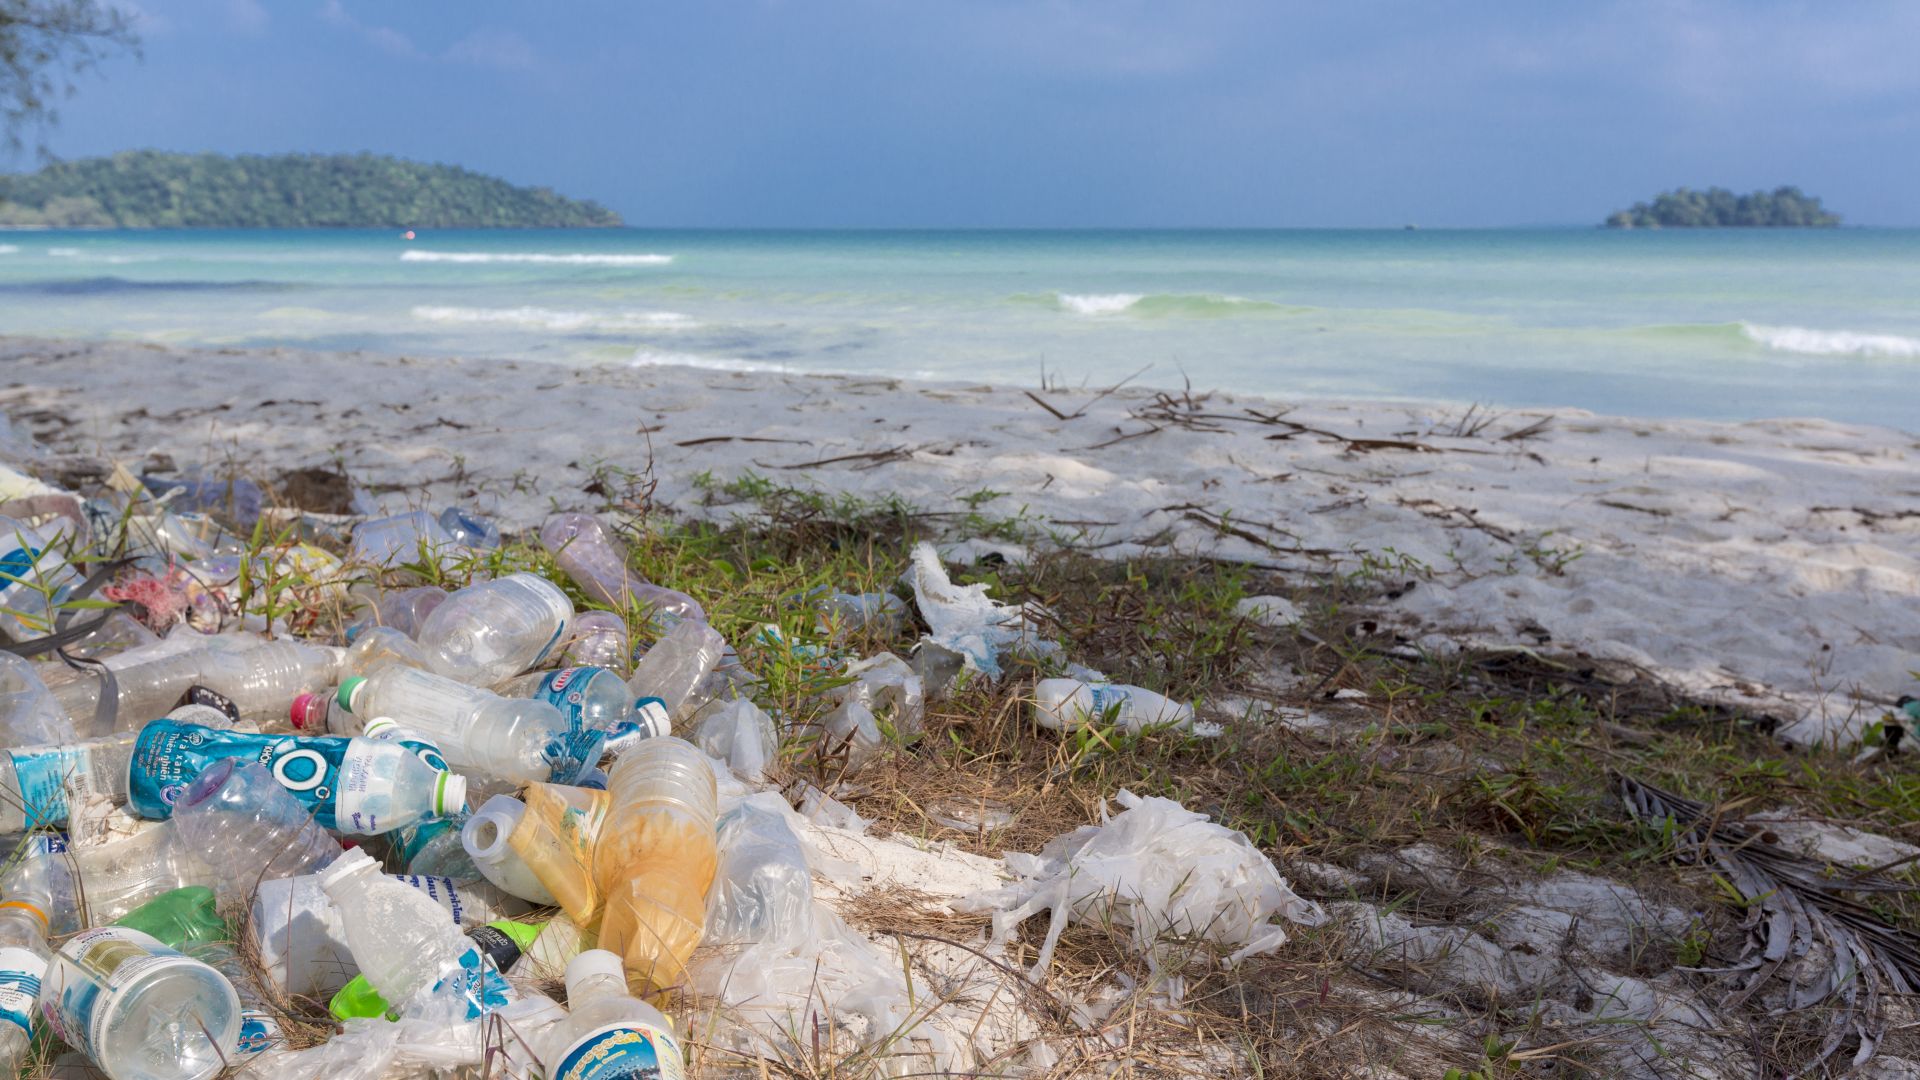 Средиземно море е застрашено да стане "море от пластмаса"